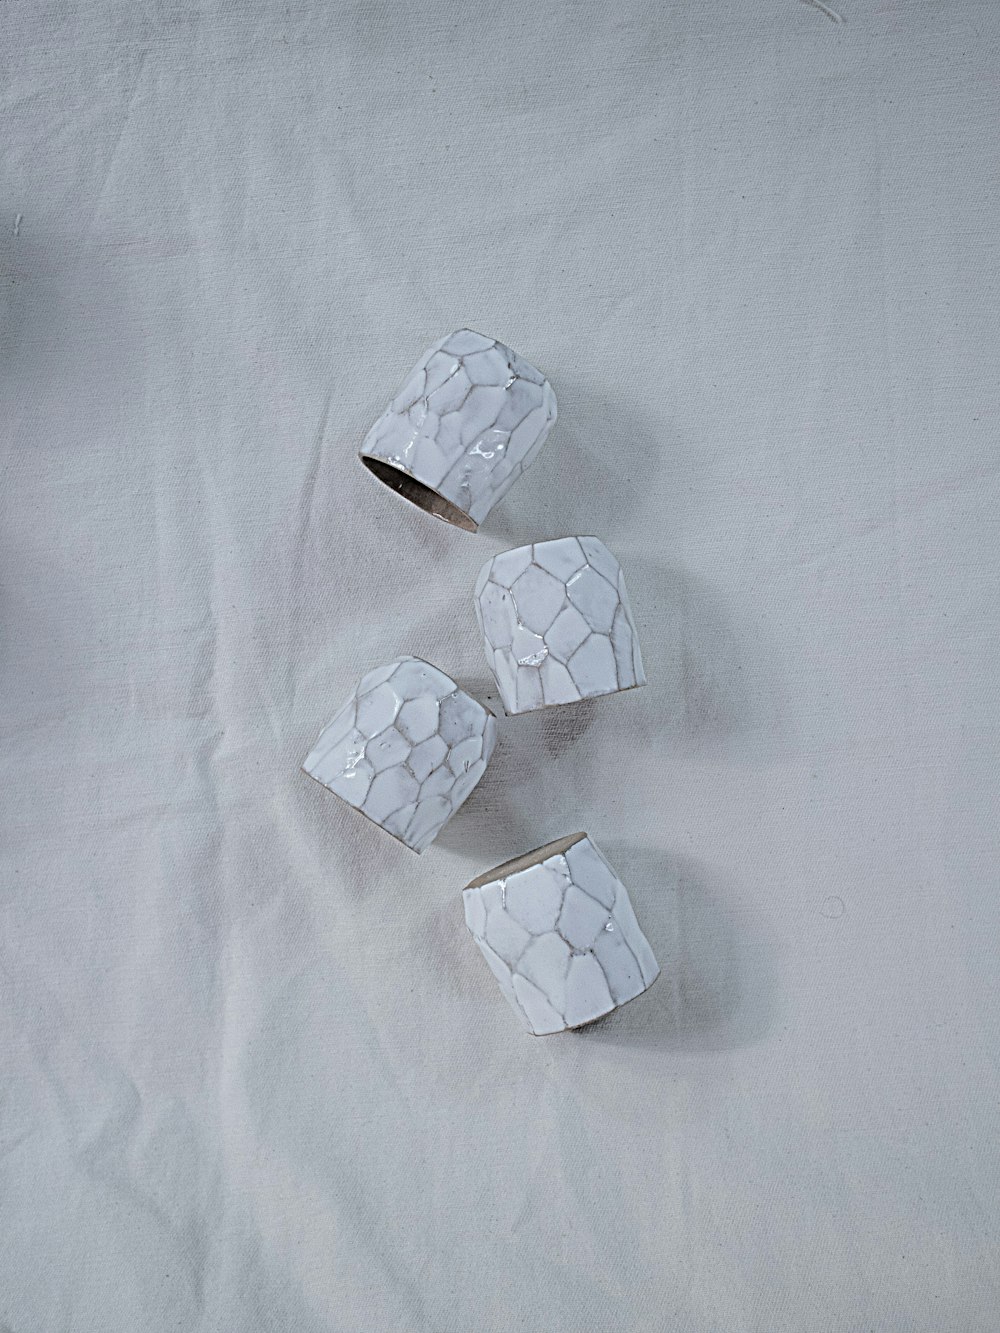 white cube on white textile